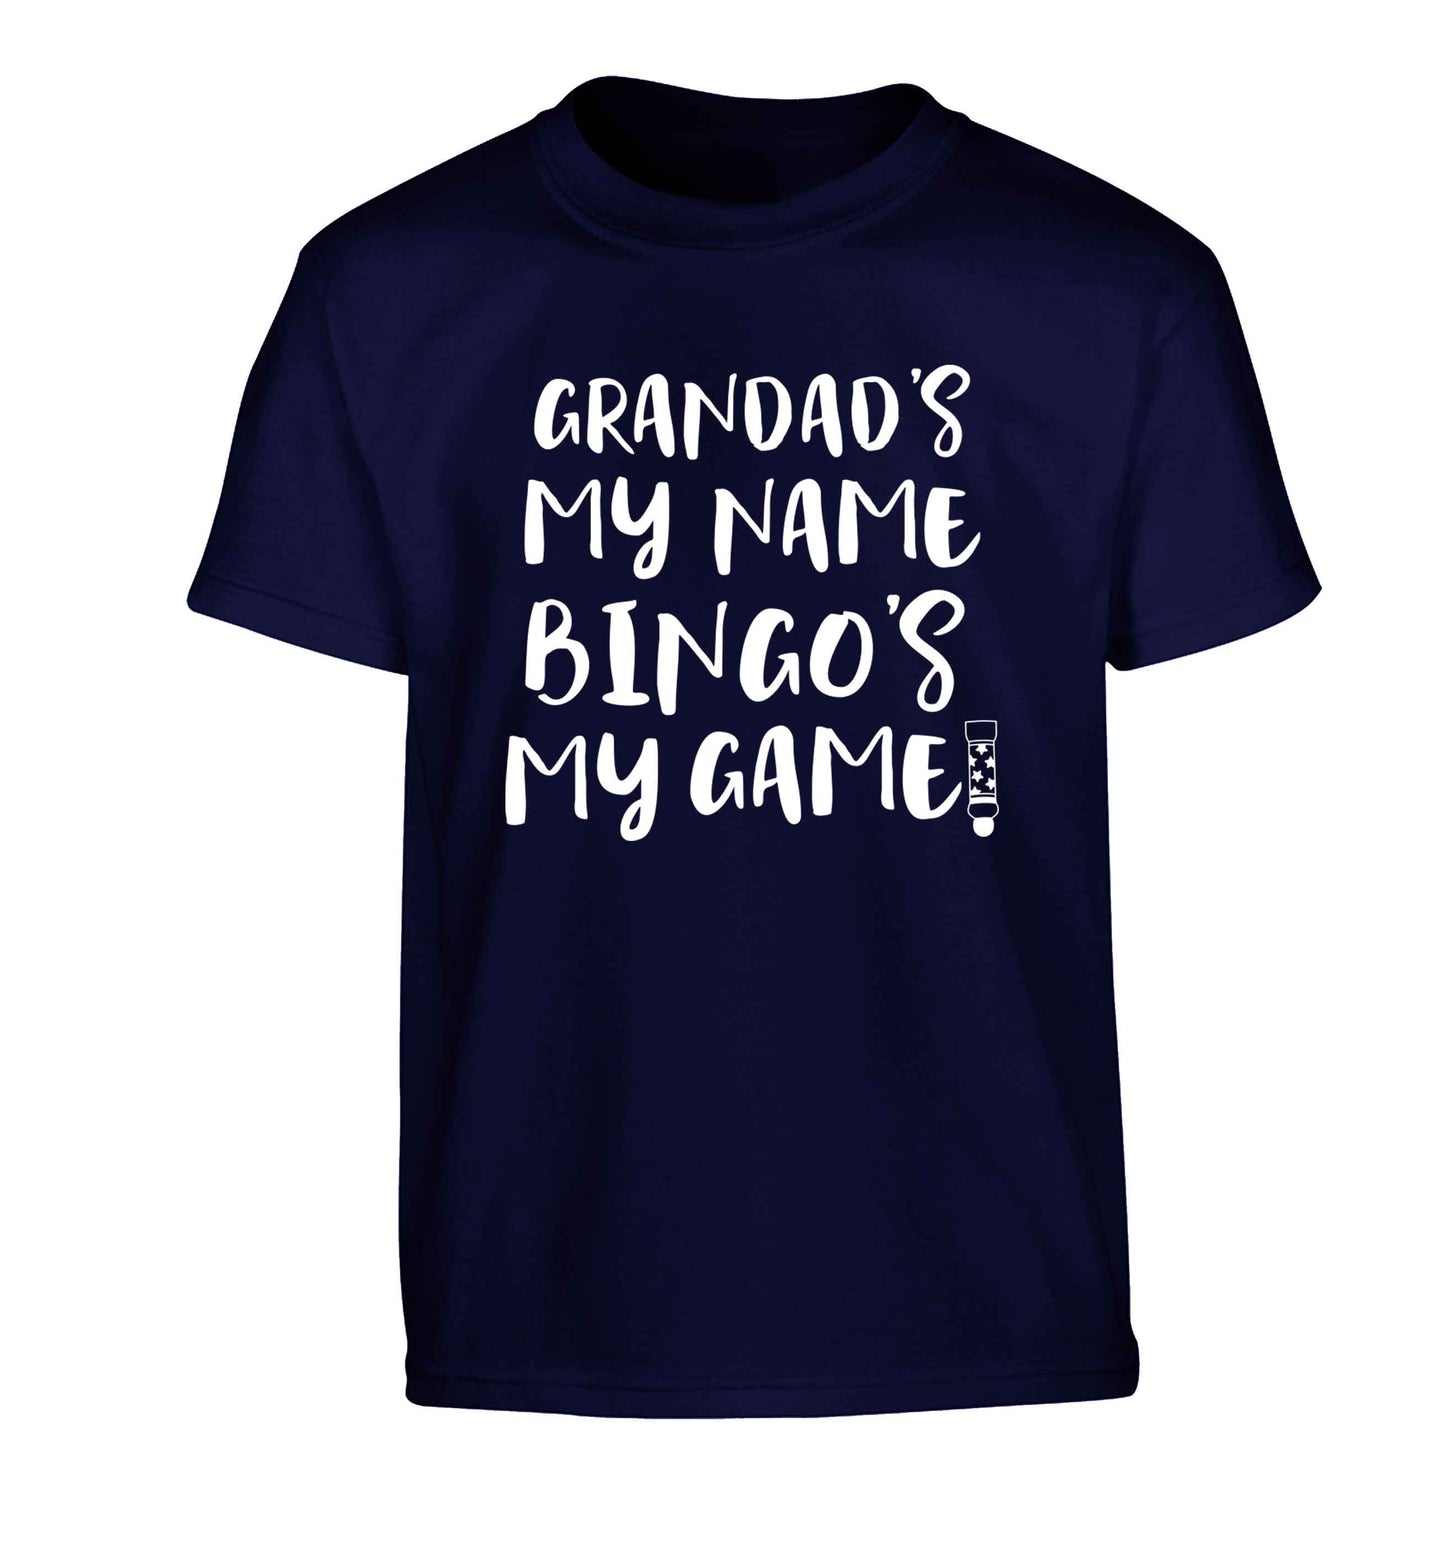 Grandad's my name bingo's my game! Children's navy Tshirt 12-13 Years